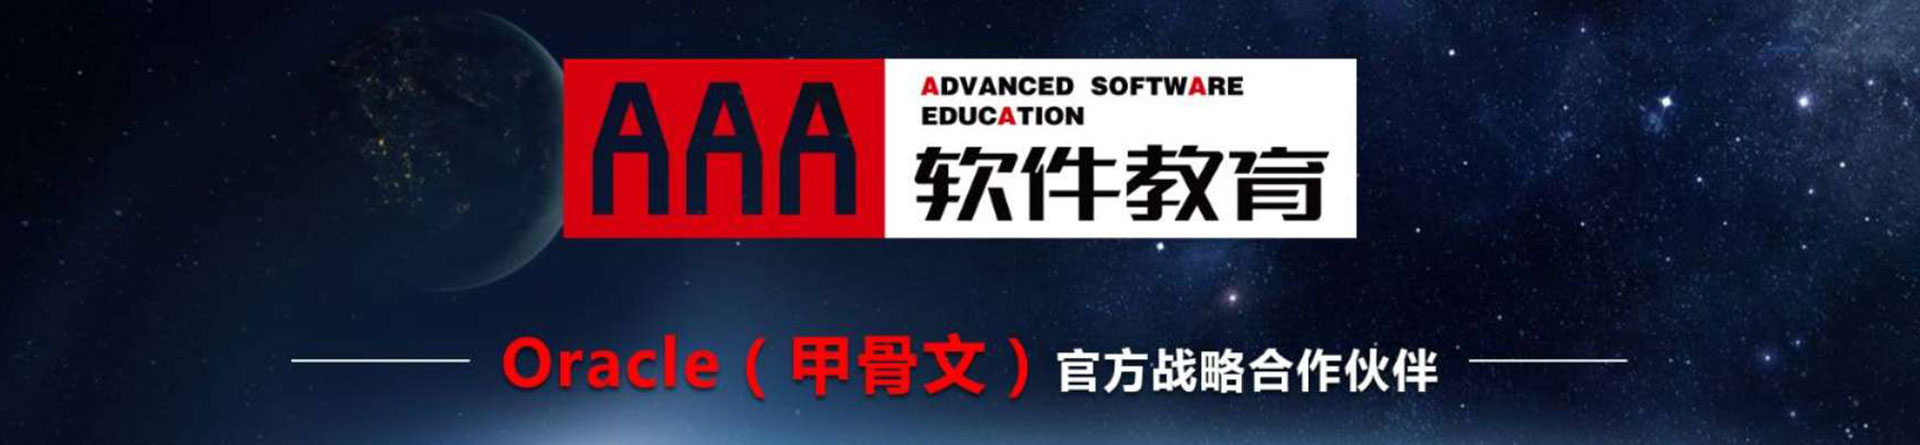 河南AAA软件教育